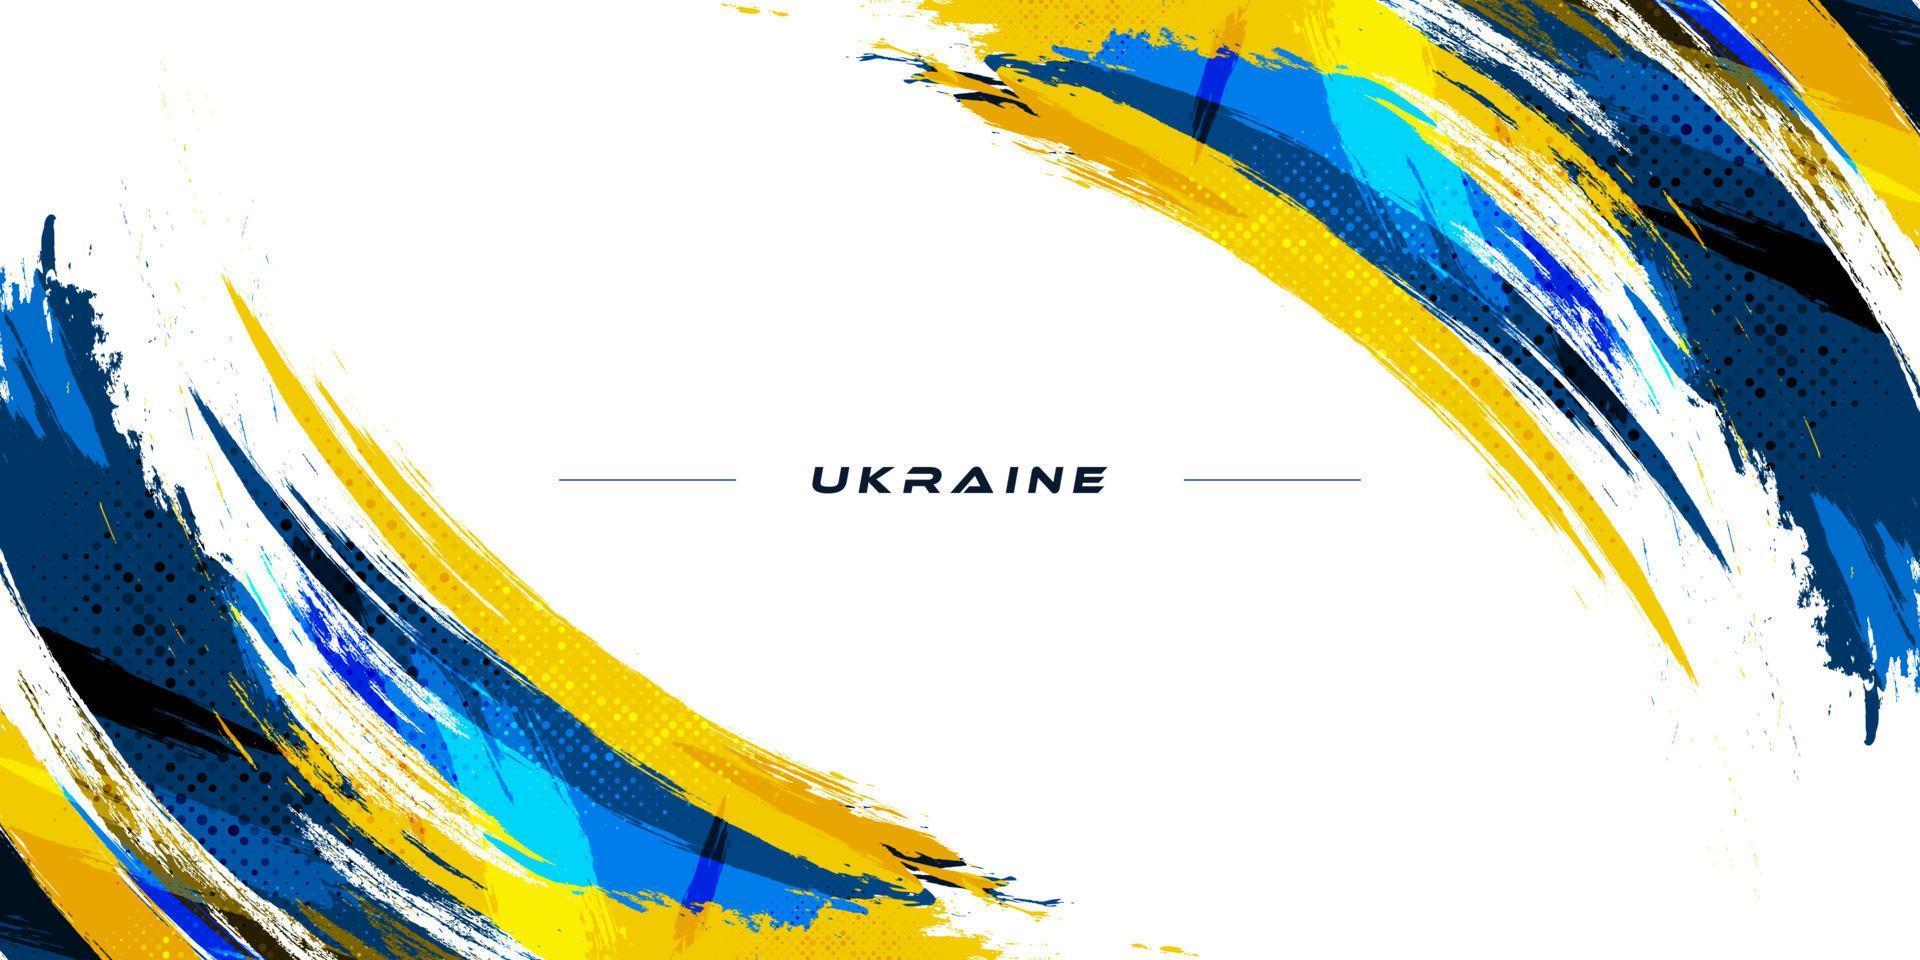 Oekraïne vlag met grunge en brush concept geïsoleerd op een witte achtergrond. Oekraïne achtergrond met penseelstijl en halftooneffect vector